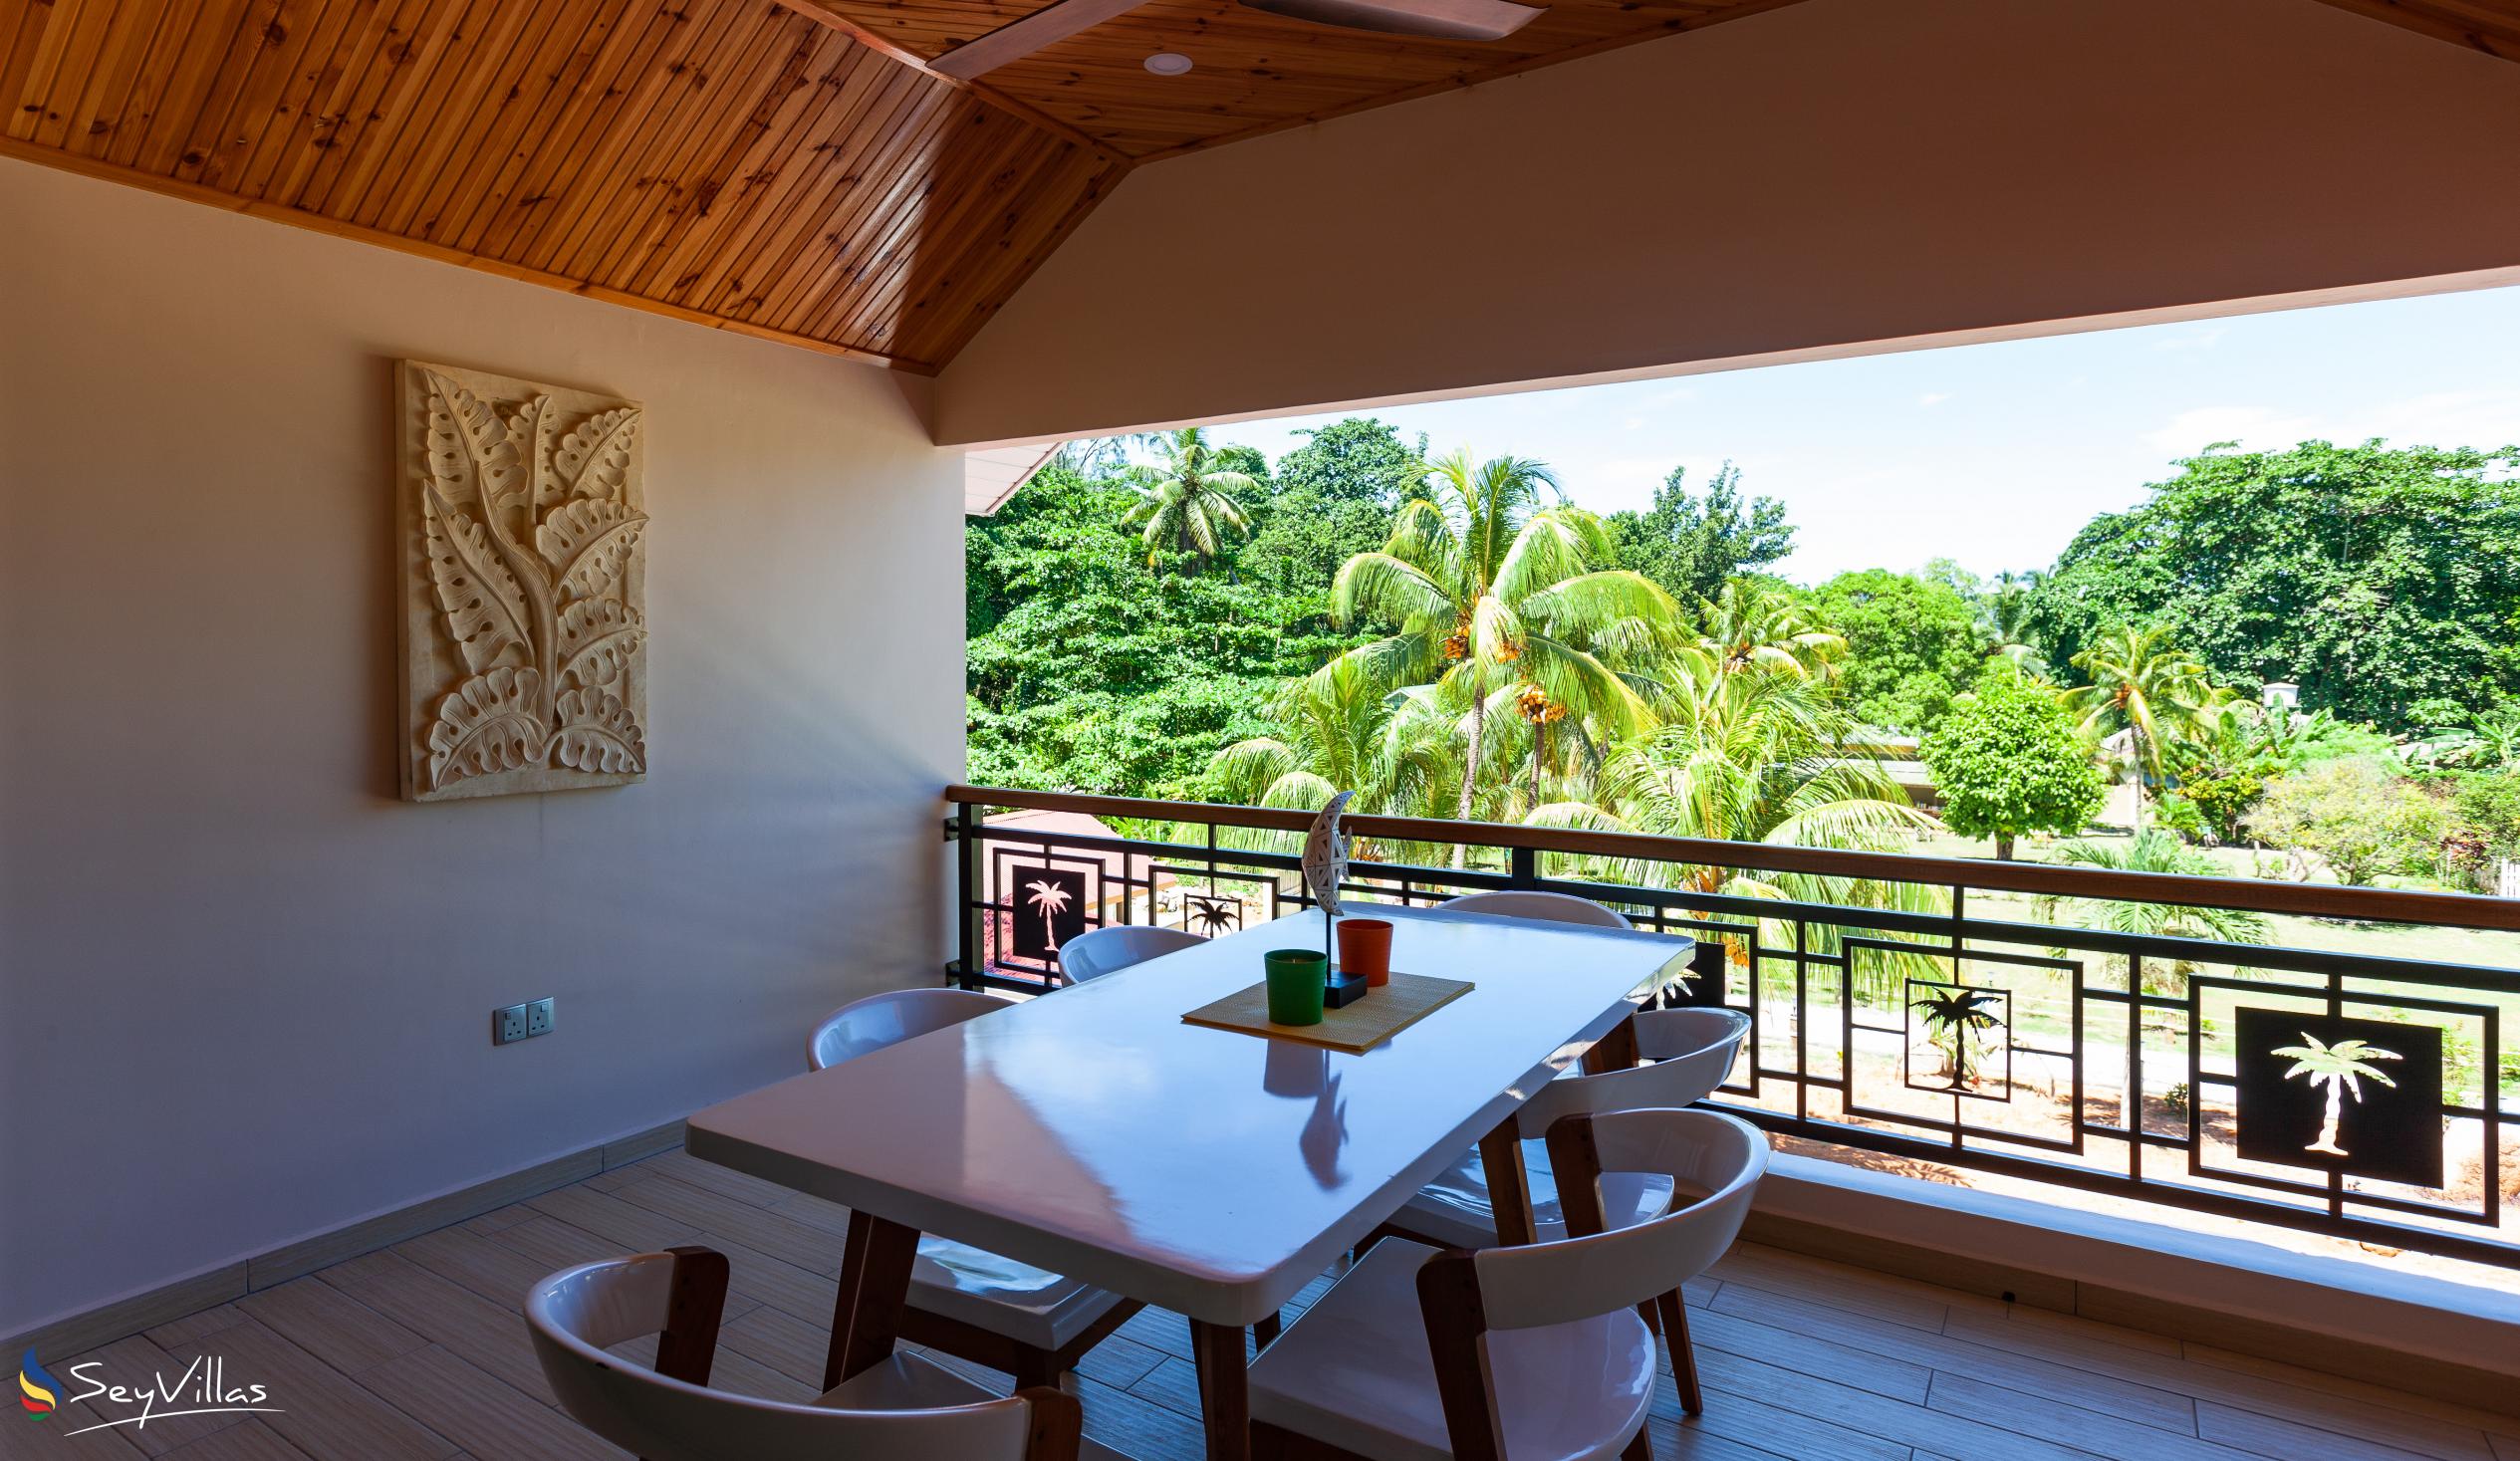 Photo 138: Casa de Leela - Penthouse Apartment - La Digue (Seychelles)